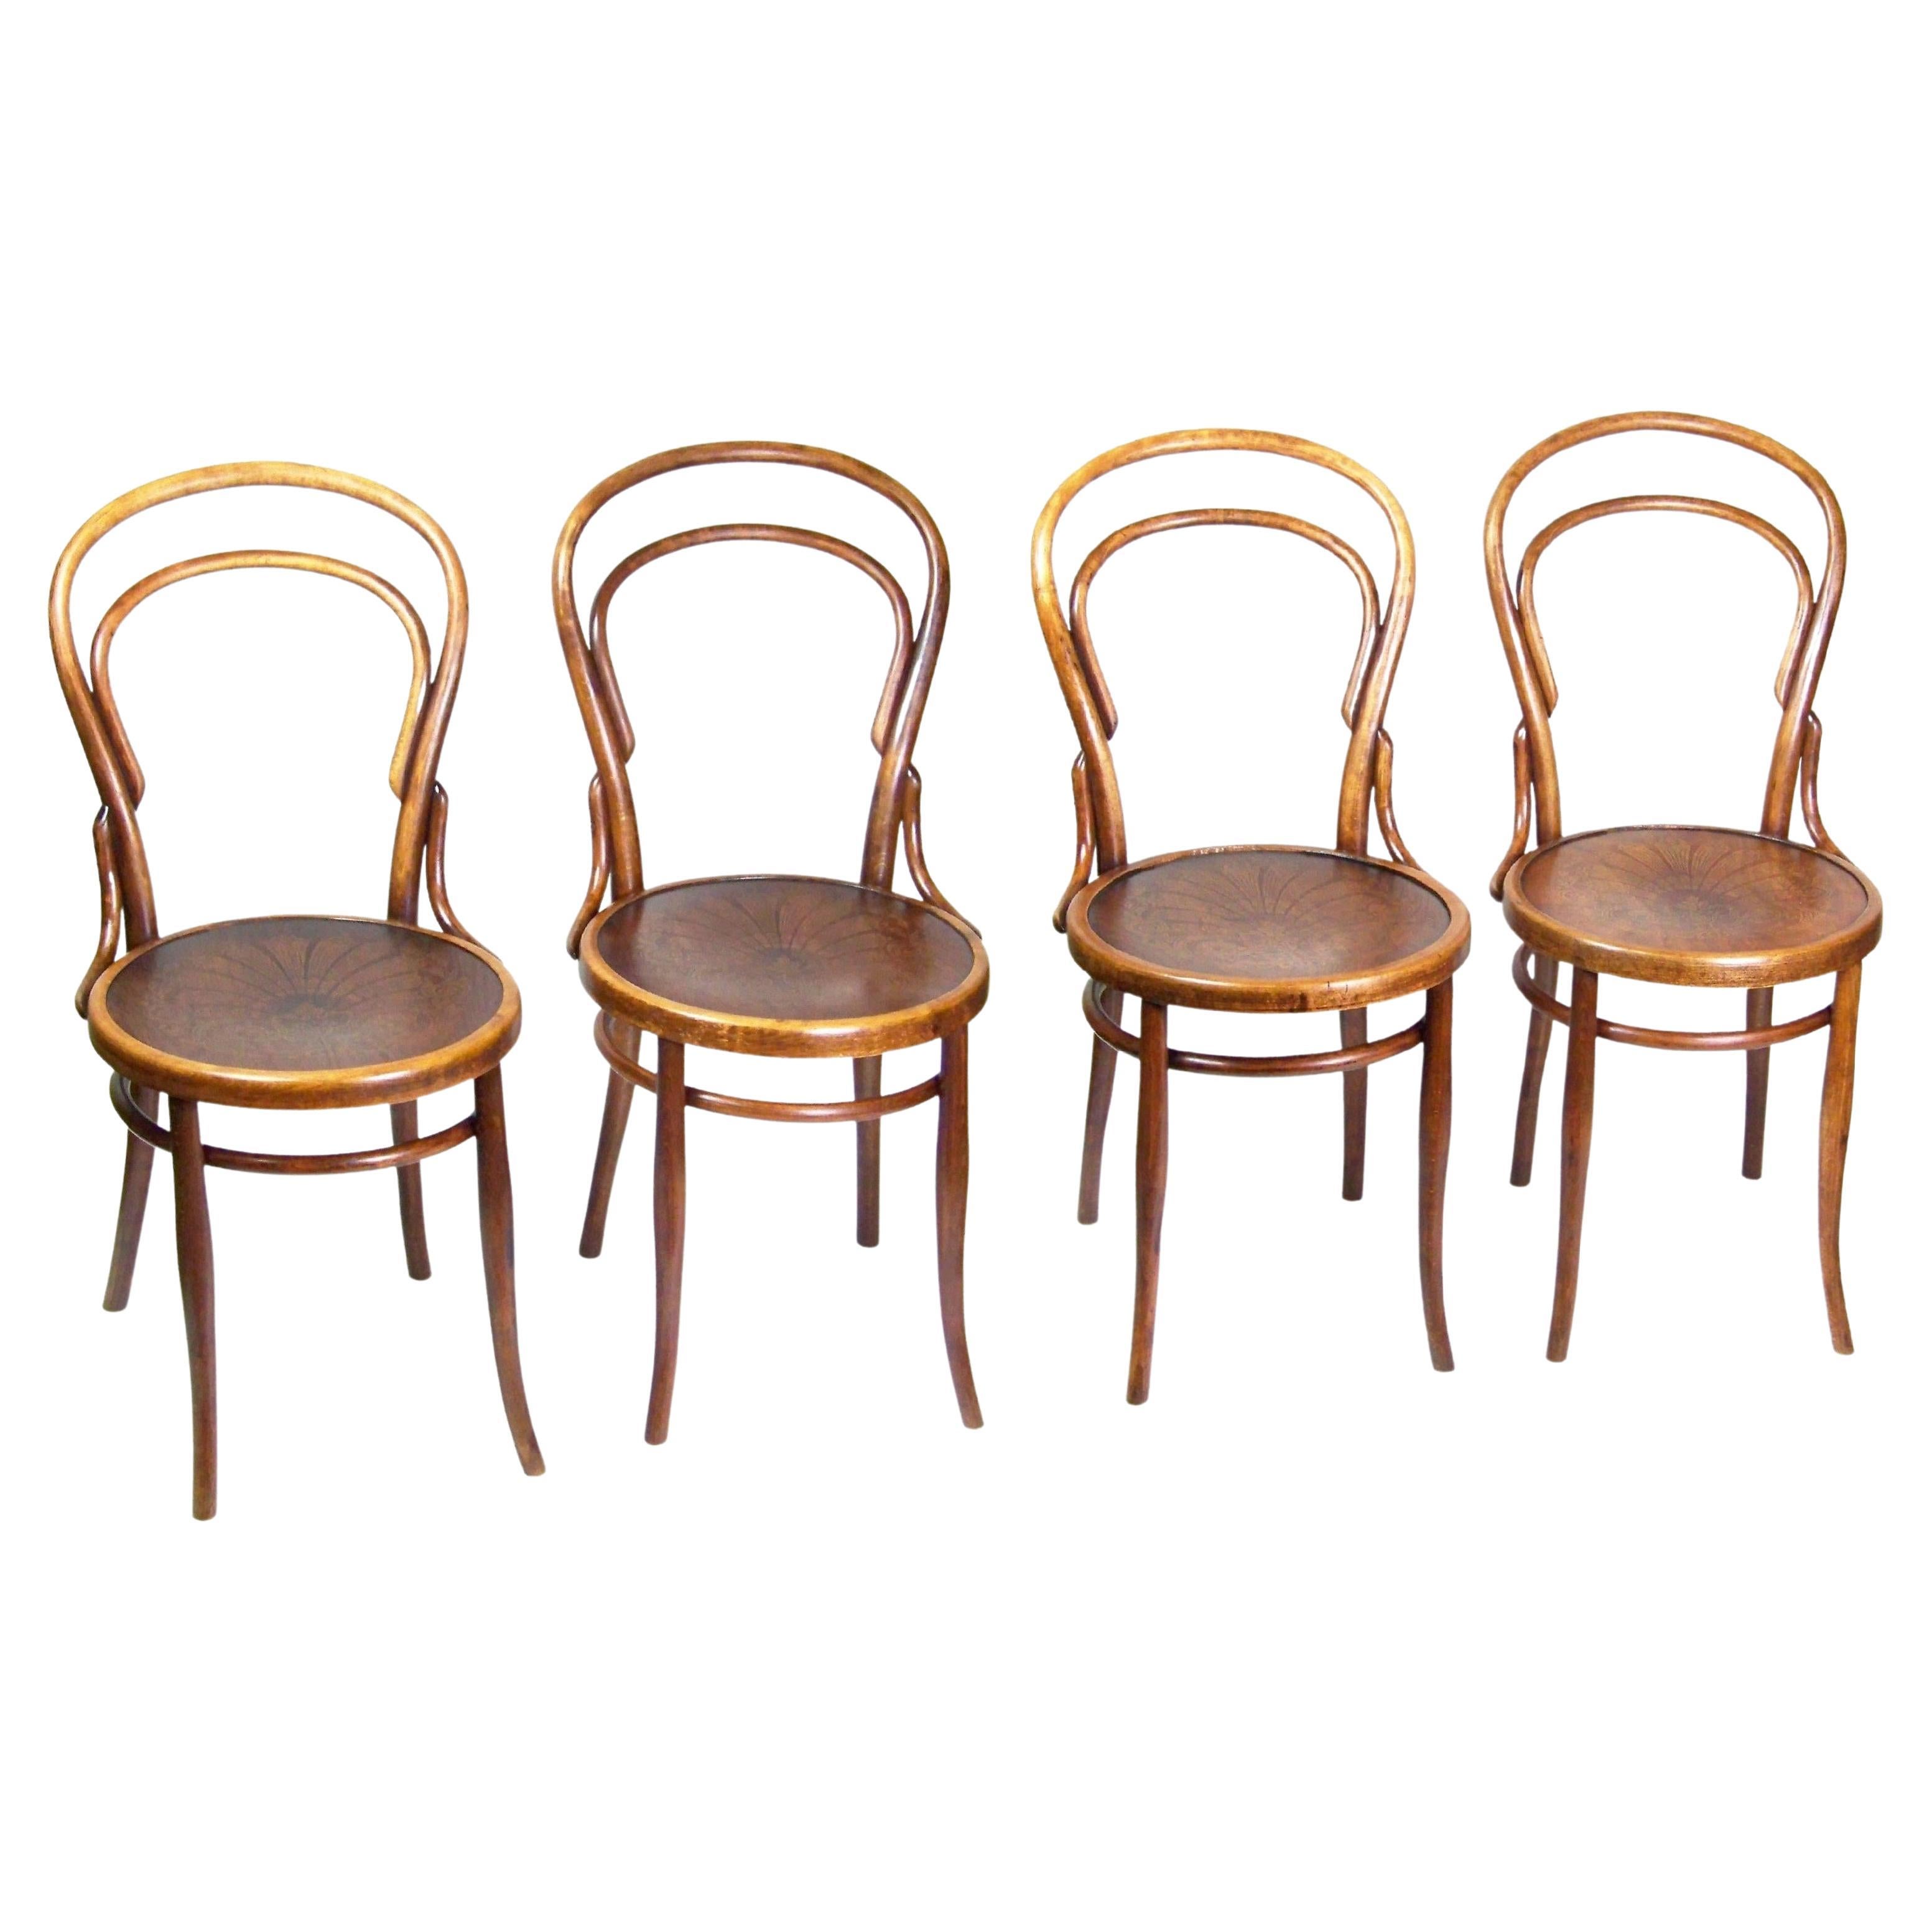 Four Chairs Thonet Nr.14, 1900 circa